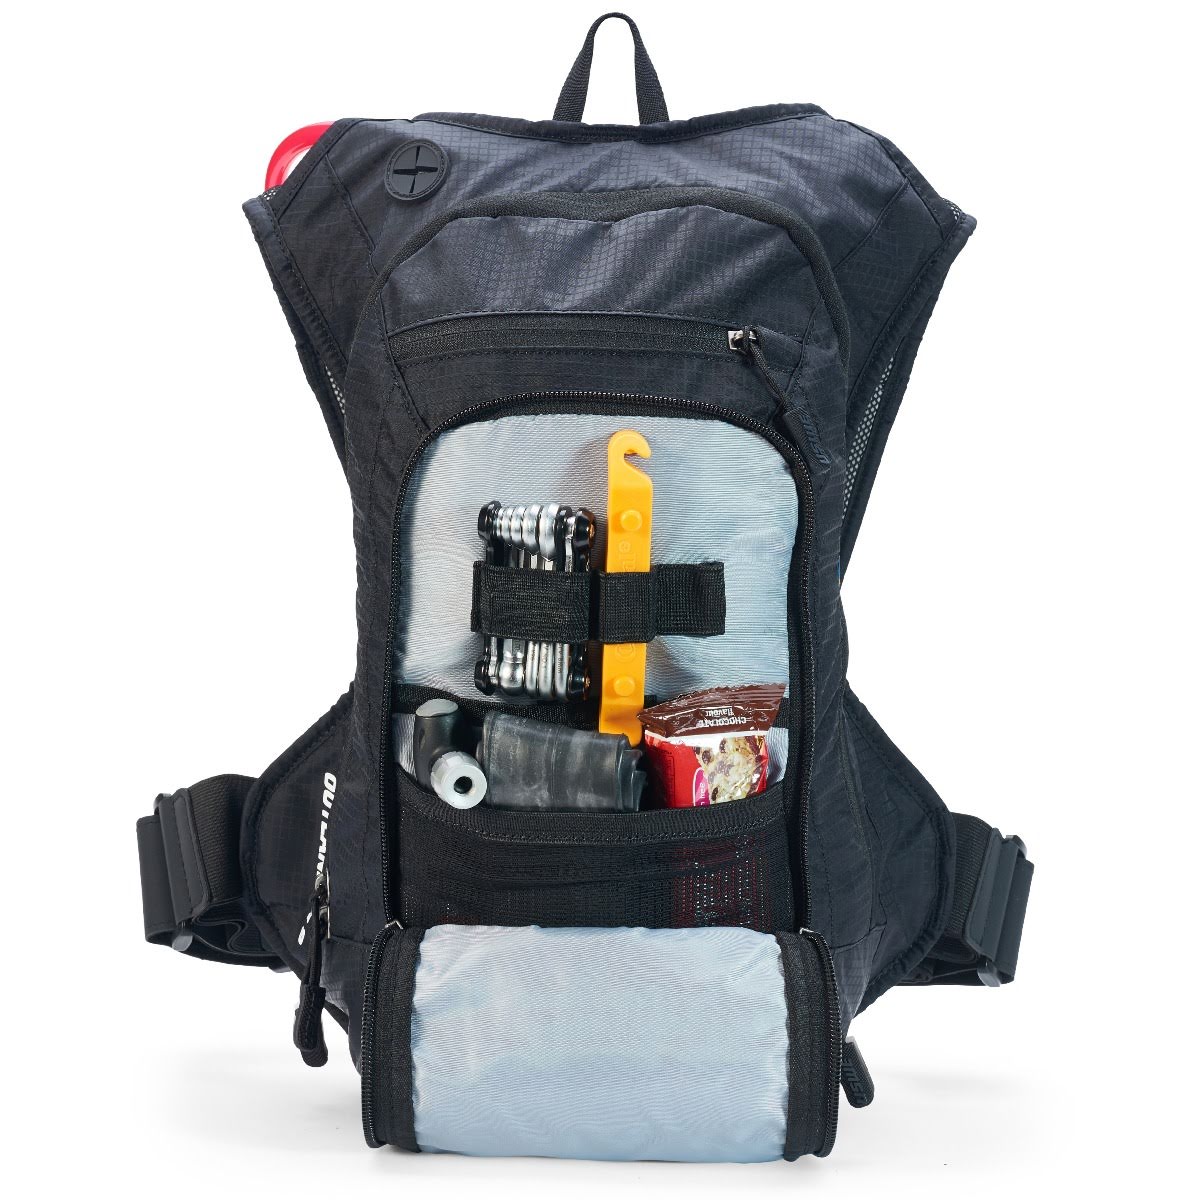 USWE Outlander 9 Hydration Backpack Black – With 3 Litre Bladder